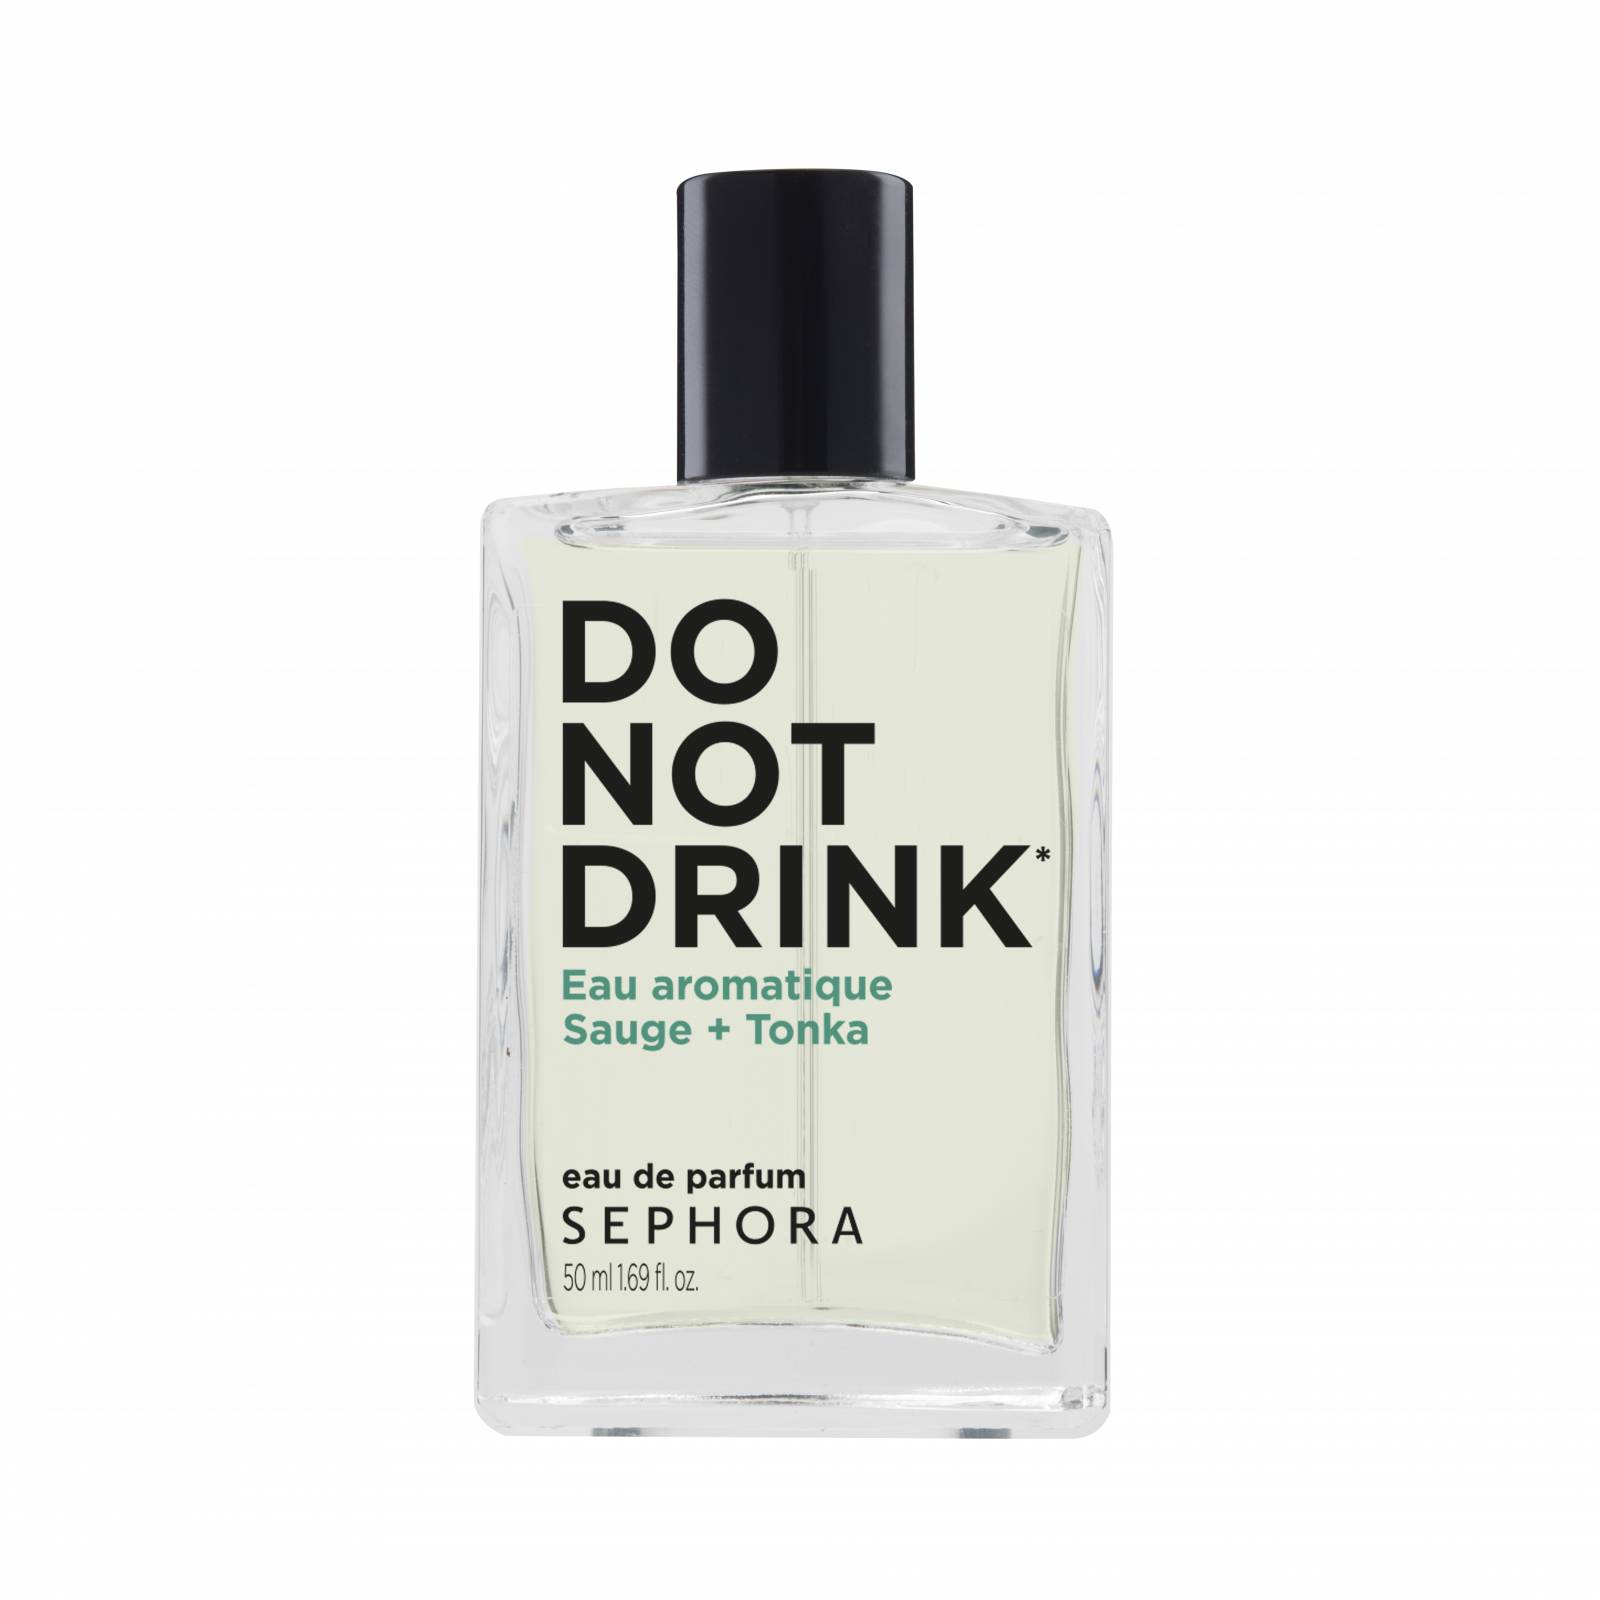 Zapachy z kolekcji „Do not drink”, SEPHORA COLLECTION 99 zł/30 ml (fot. materiały prasowe)